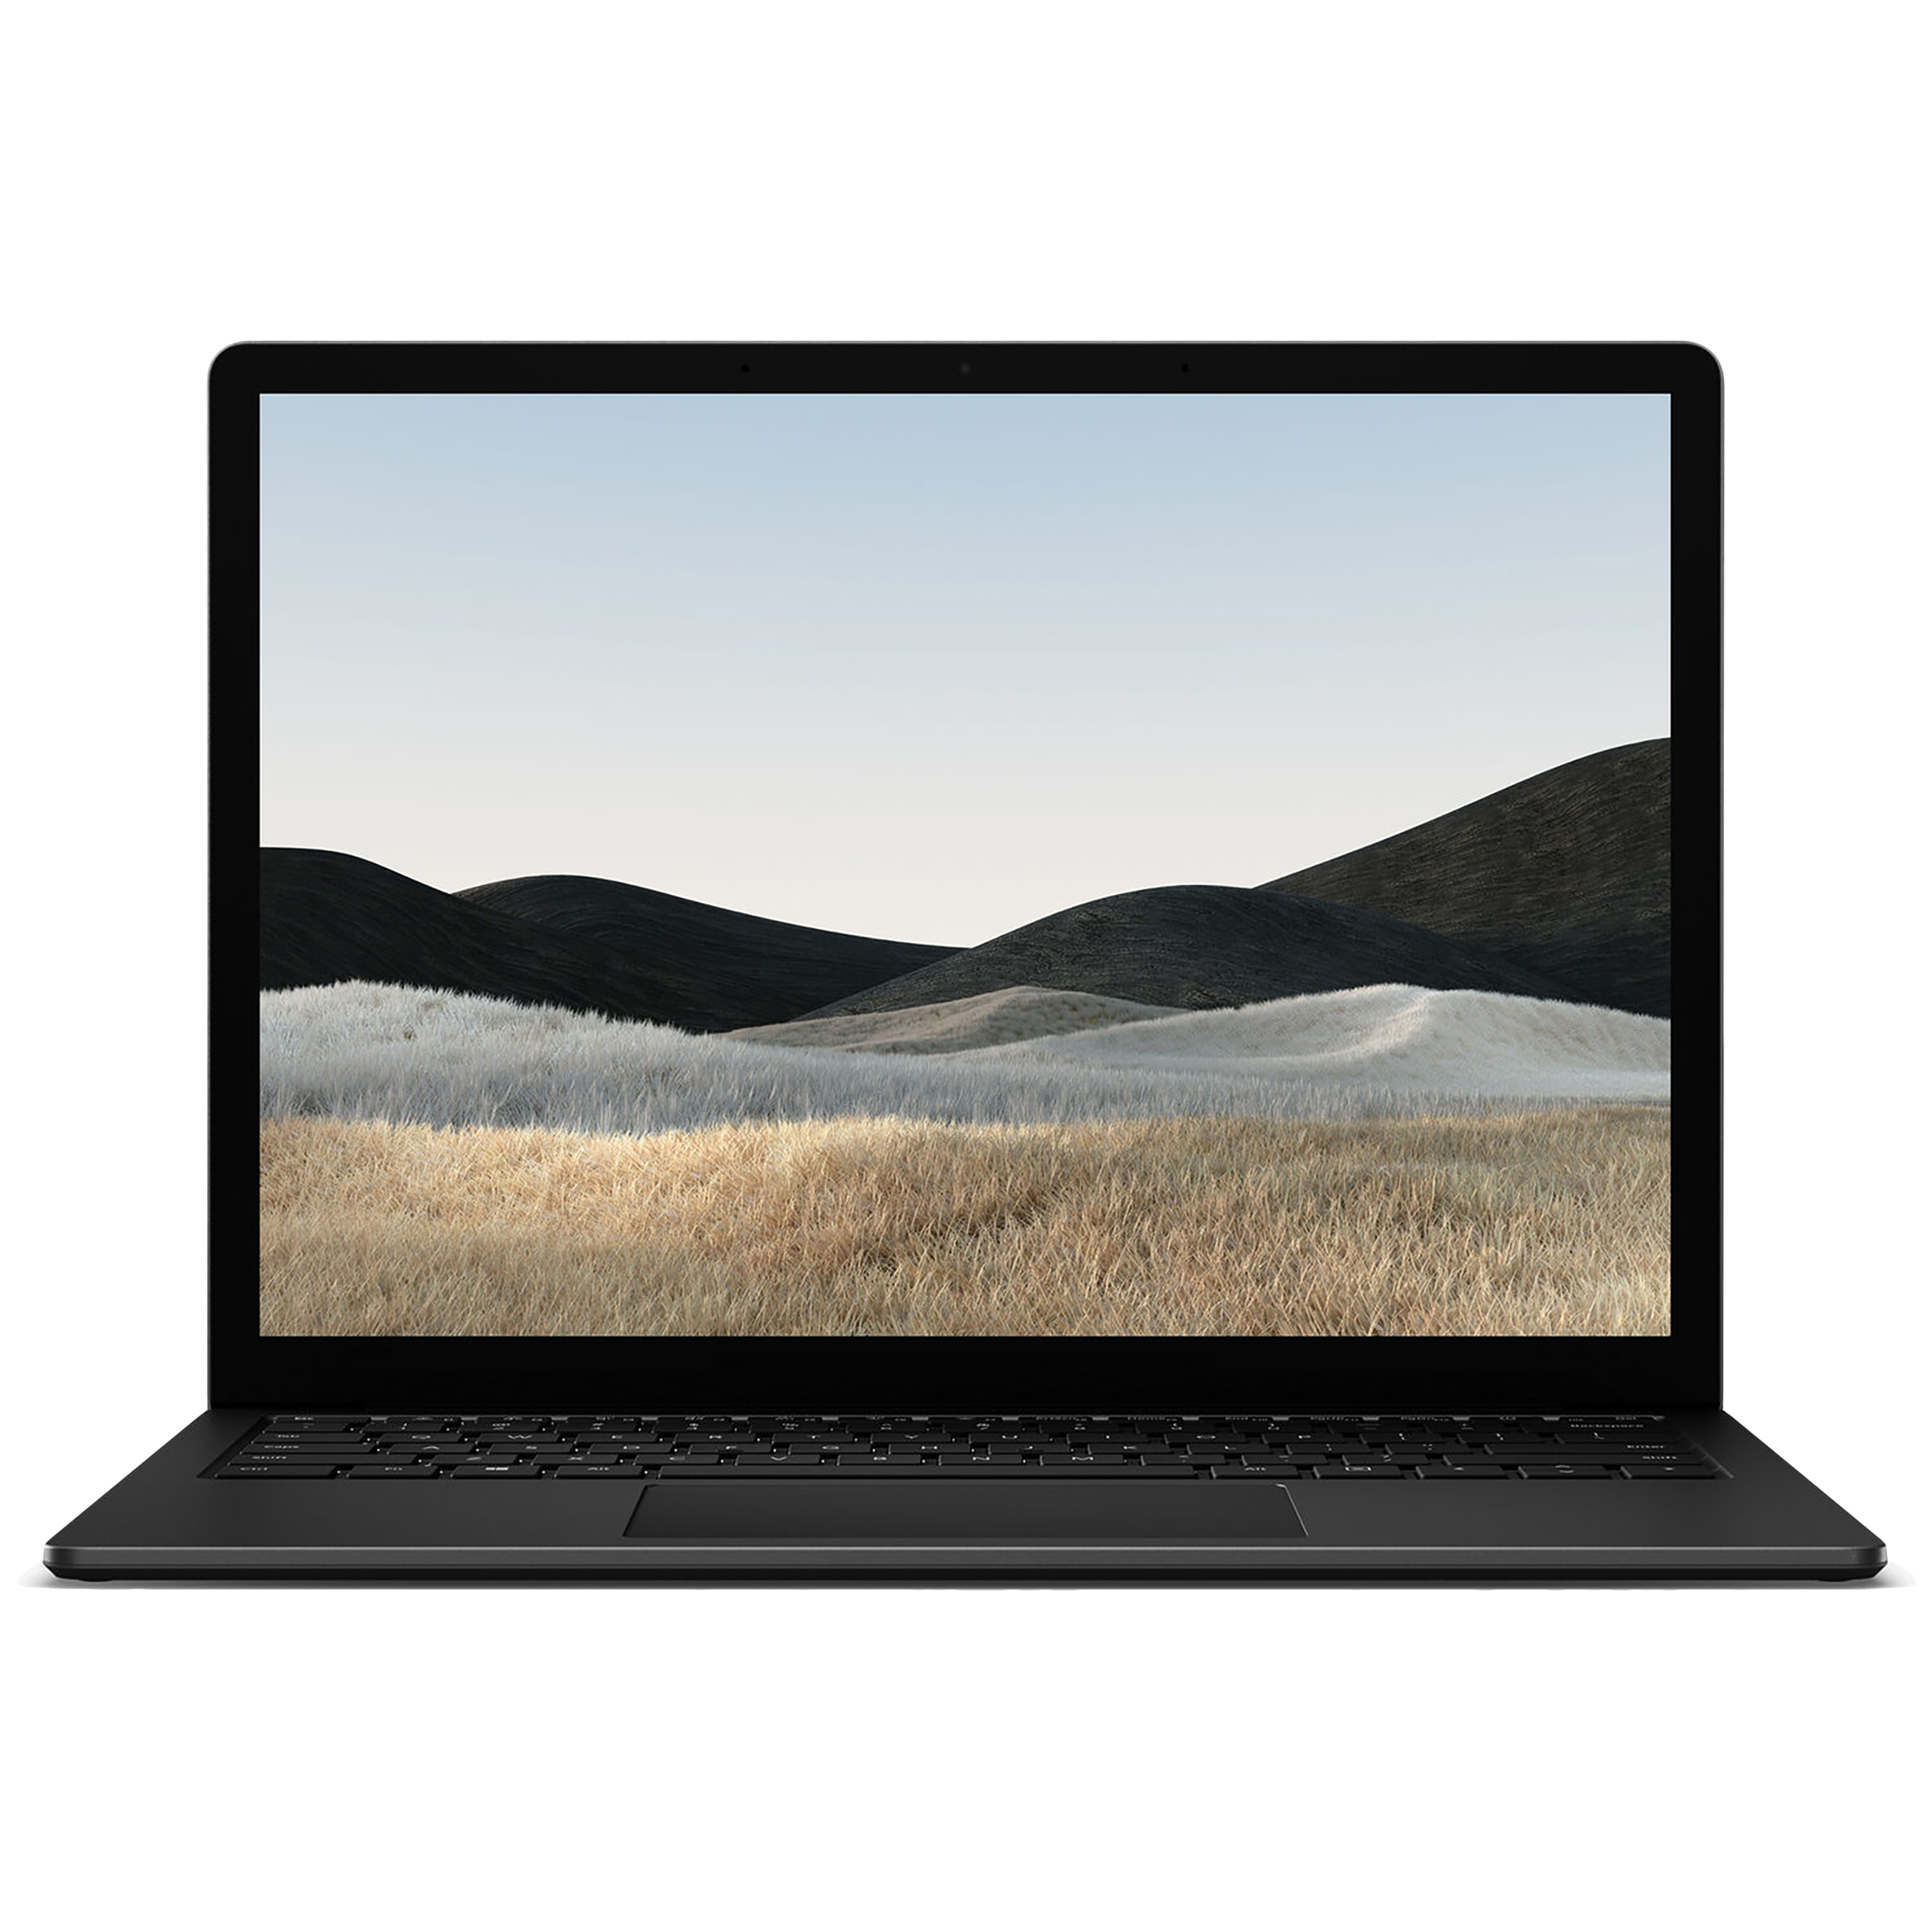 نکته خرید - قیمت روز لپ تاپ 13.5 اینچی مایکروسافت مدل Surface 4 - C خرید